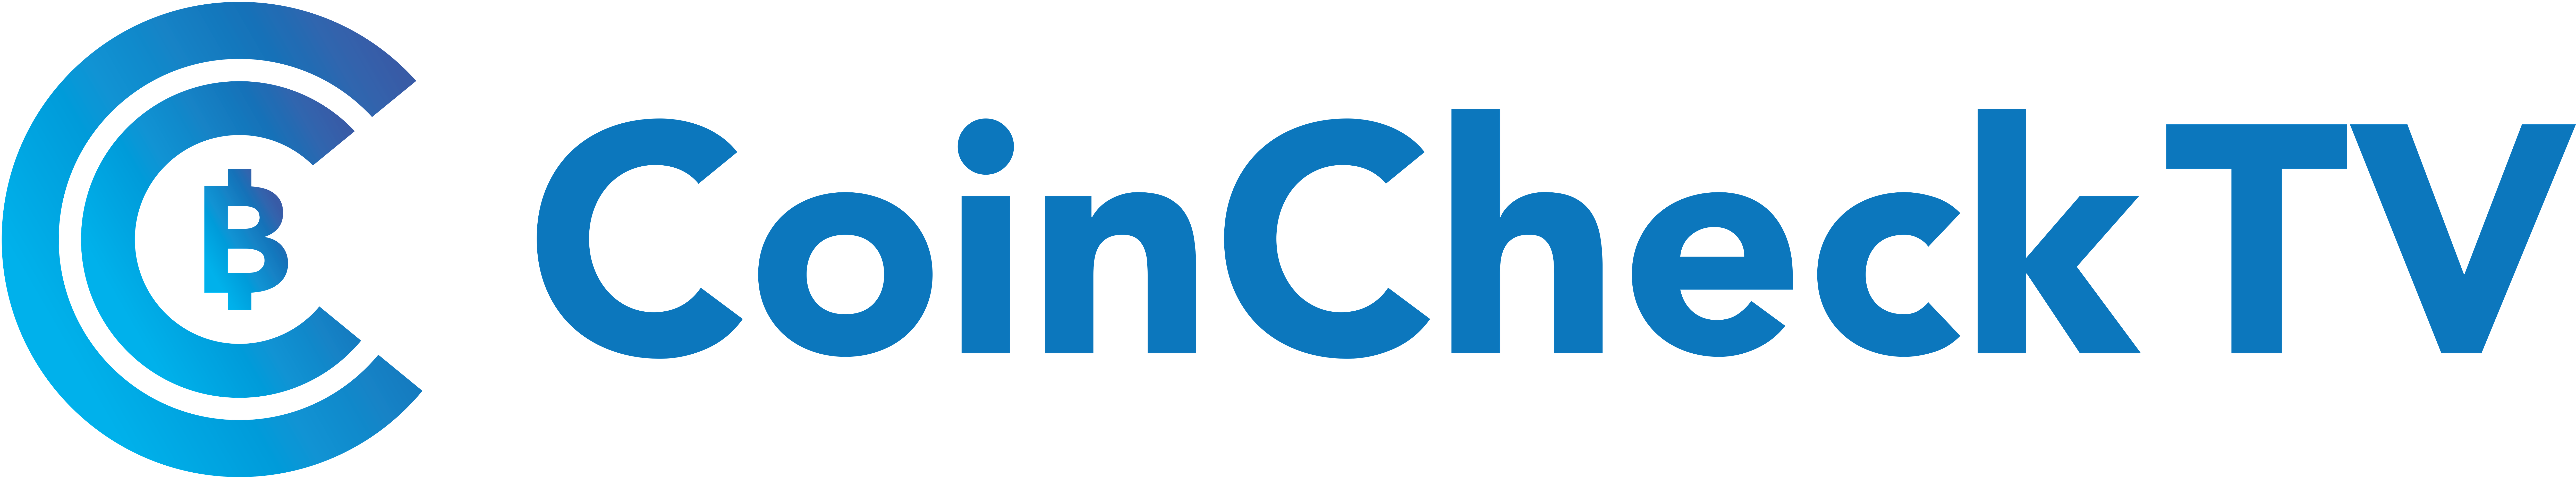 CoinCheck Tv